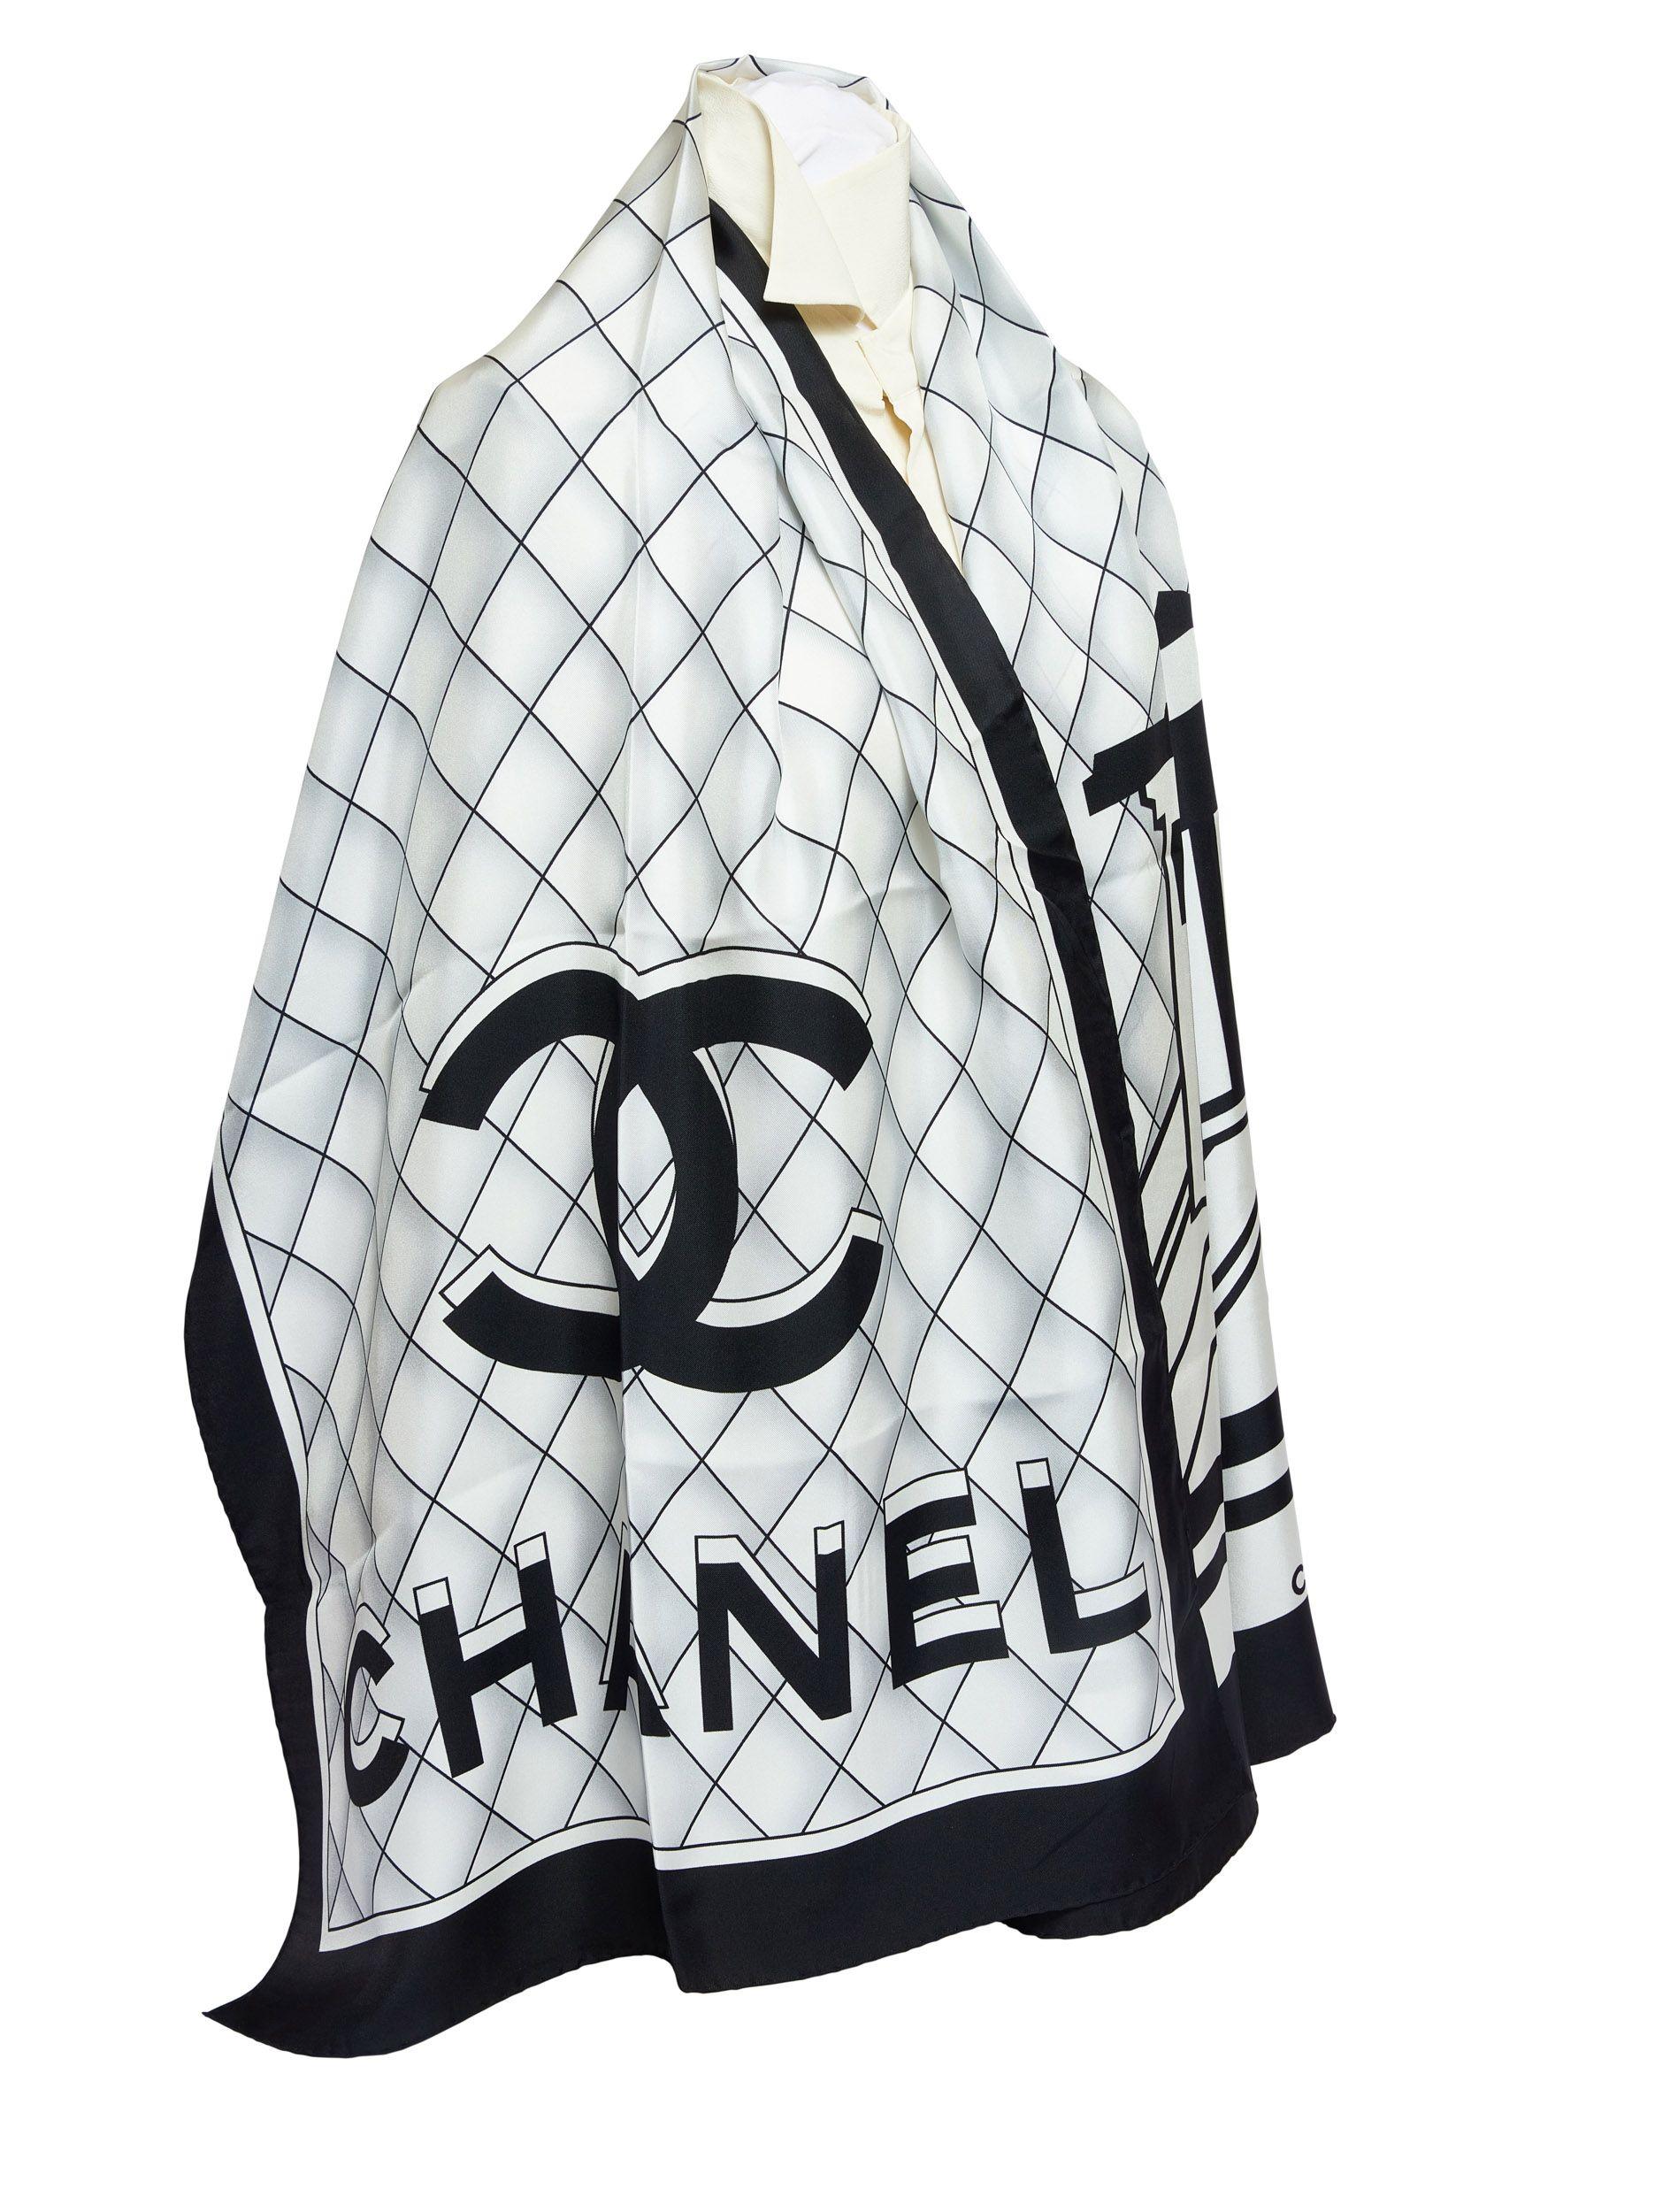 Schwarzer und weißer Seidenschal von Chanel. Auf dem Schal sind die Chanel-Schriftzüge in 3D aufgedruckt. Die Blende ist schwarz und hat gerollte Kanten. Es ist brandneu.
